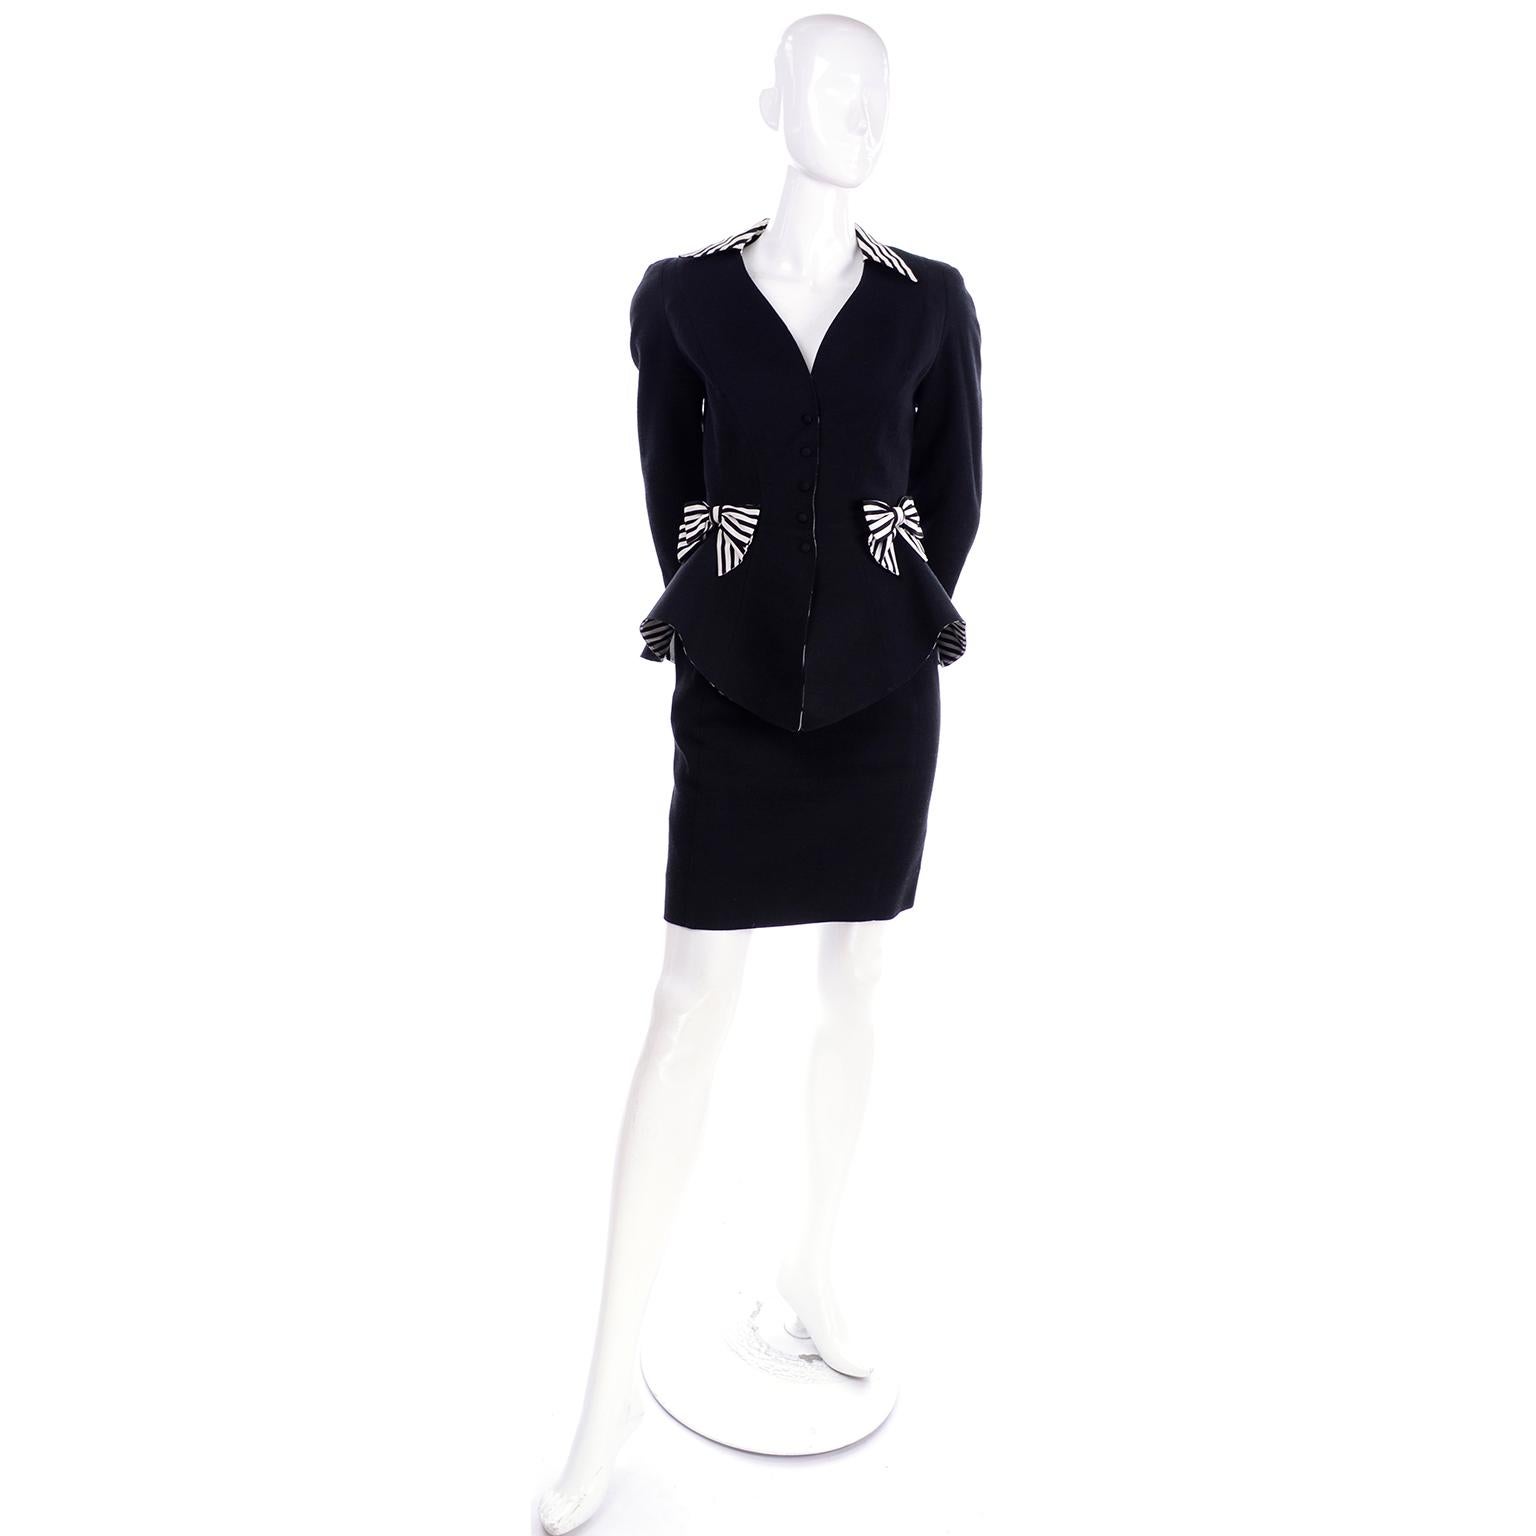 Il s'agit d'un tailleur jupe vintage des années 1980 en piqué de coton noir conçu par Thierry Mugler.  Le blazer de style péplum est doté de poignets, d'un col et de nœuds retournés à rayures noires et blanches.  Nous adorons que le péplum lui-même